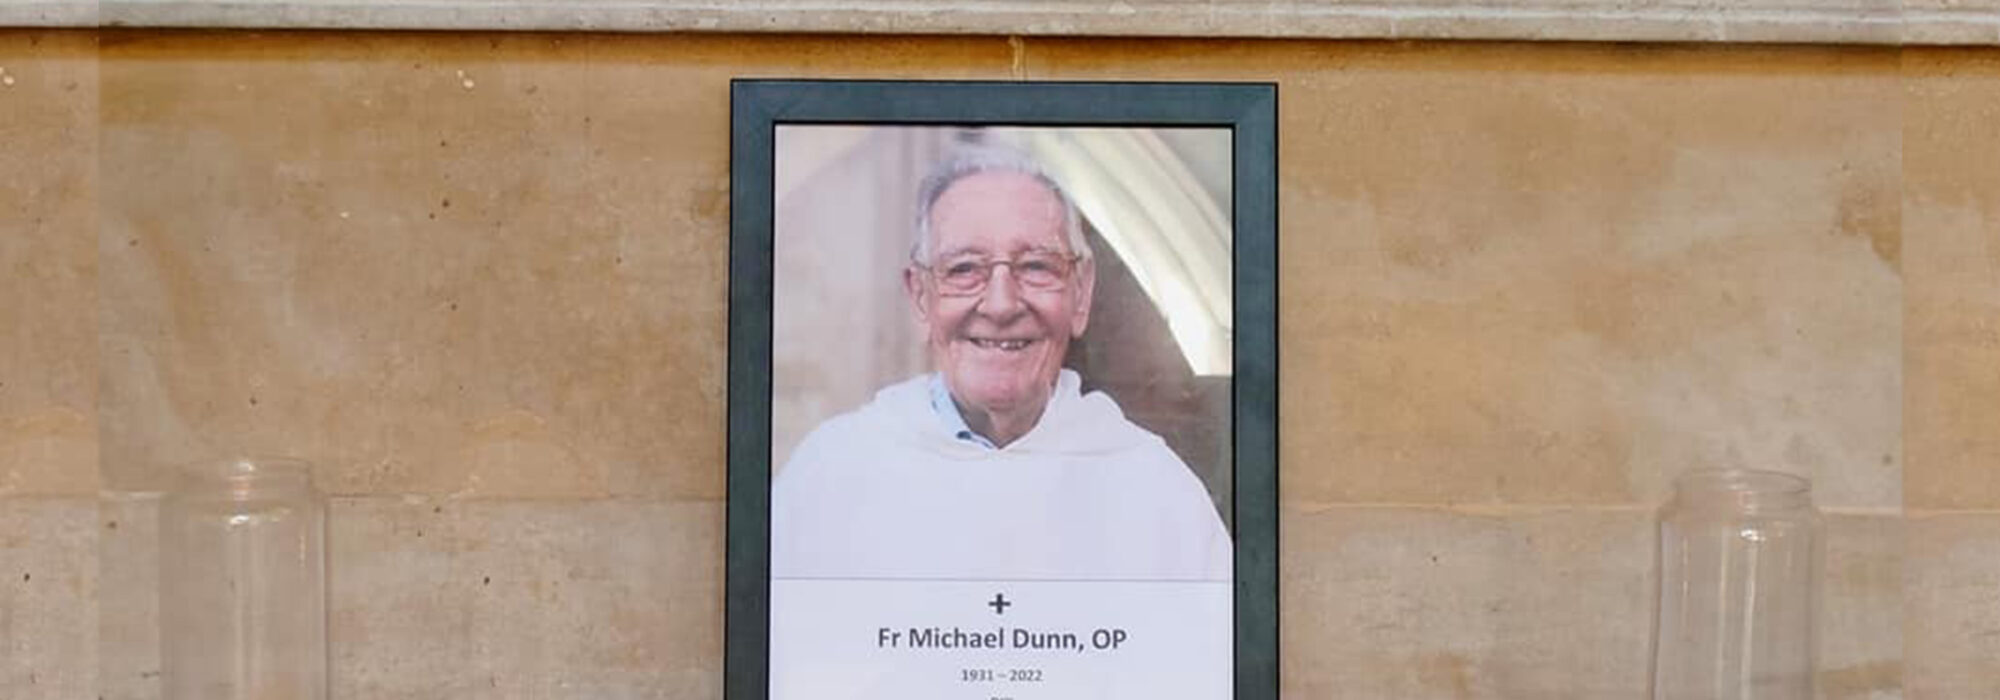 Fr Michael Dunn OP Funeral Homily